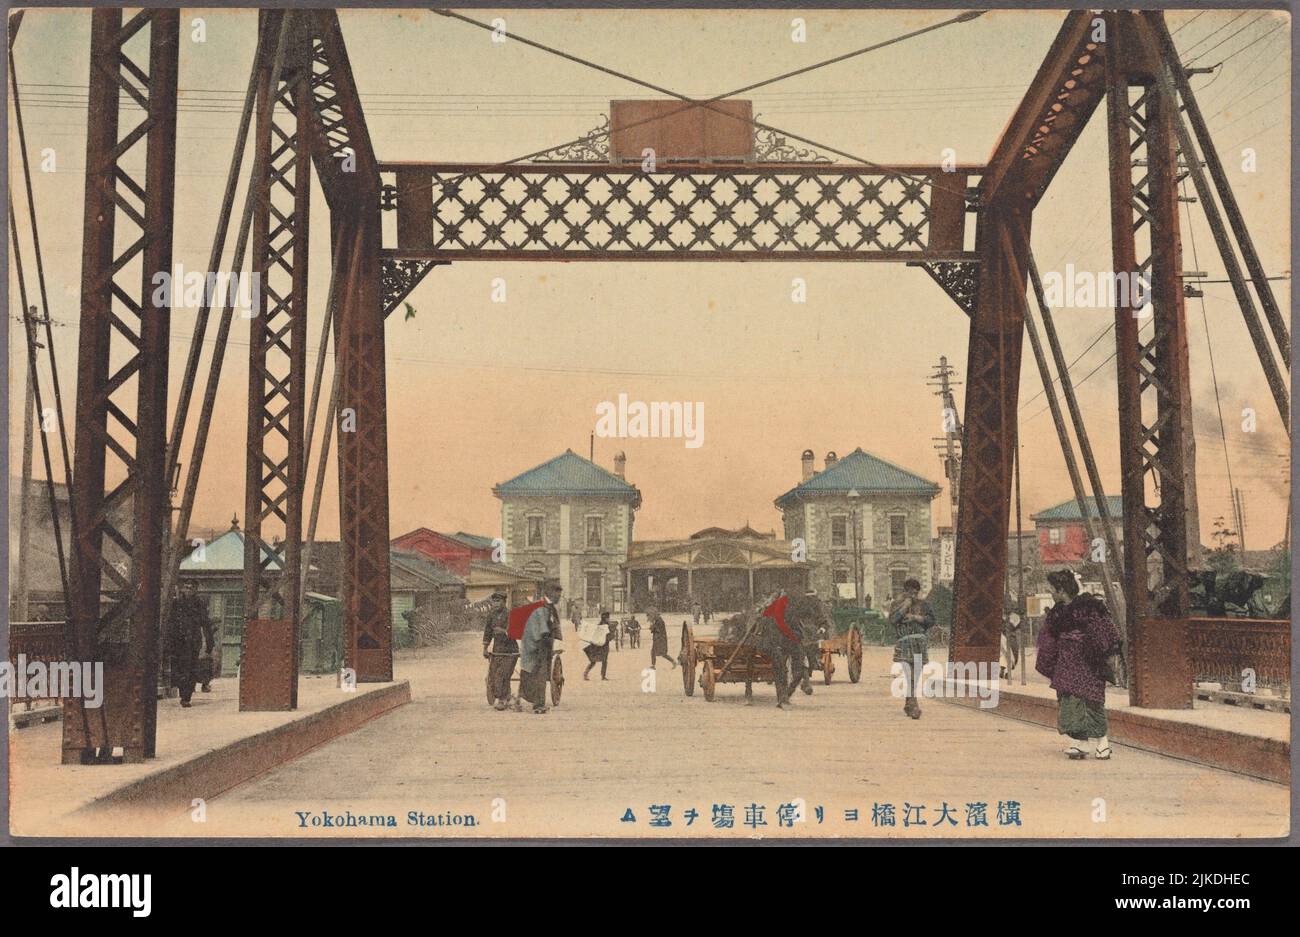 Stazione di Yokohama. Inseguimenti del Pacifico : Cartoline Giappone - Yokohama. Data di pubblicazione: 1907 - 1918 luogo: Made in Japan Editore: s.n. Yokohama-shi (Giappone) Foto Stock